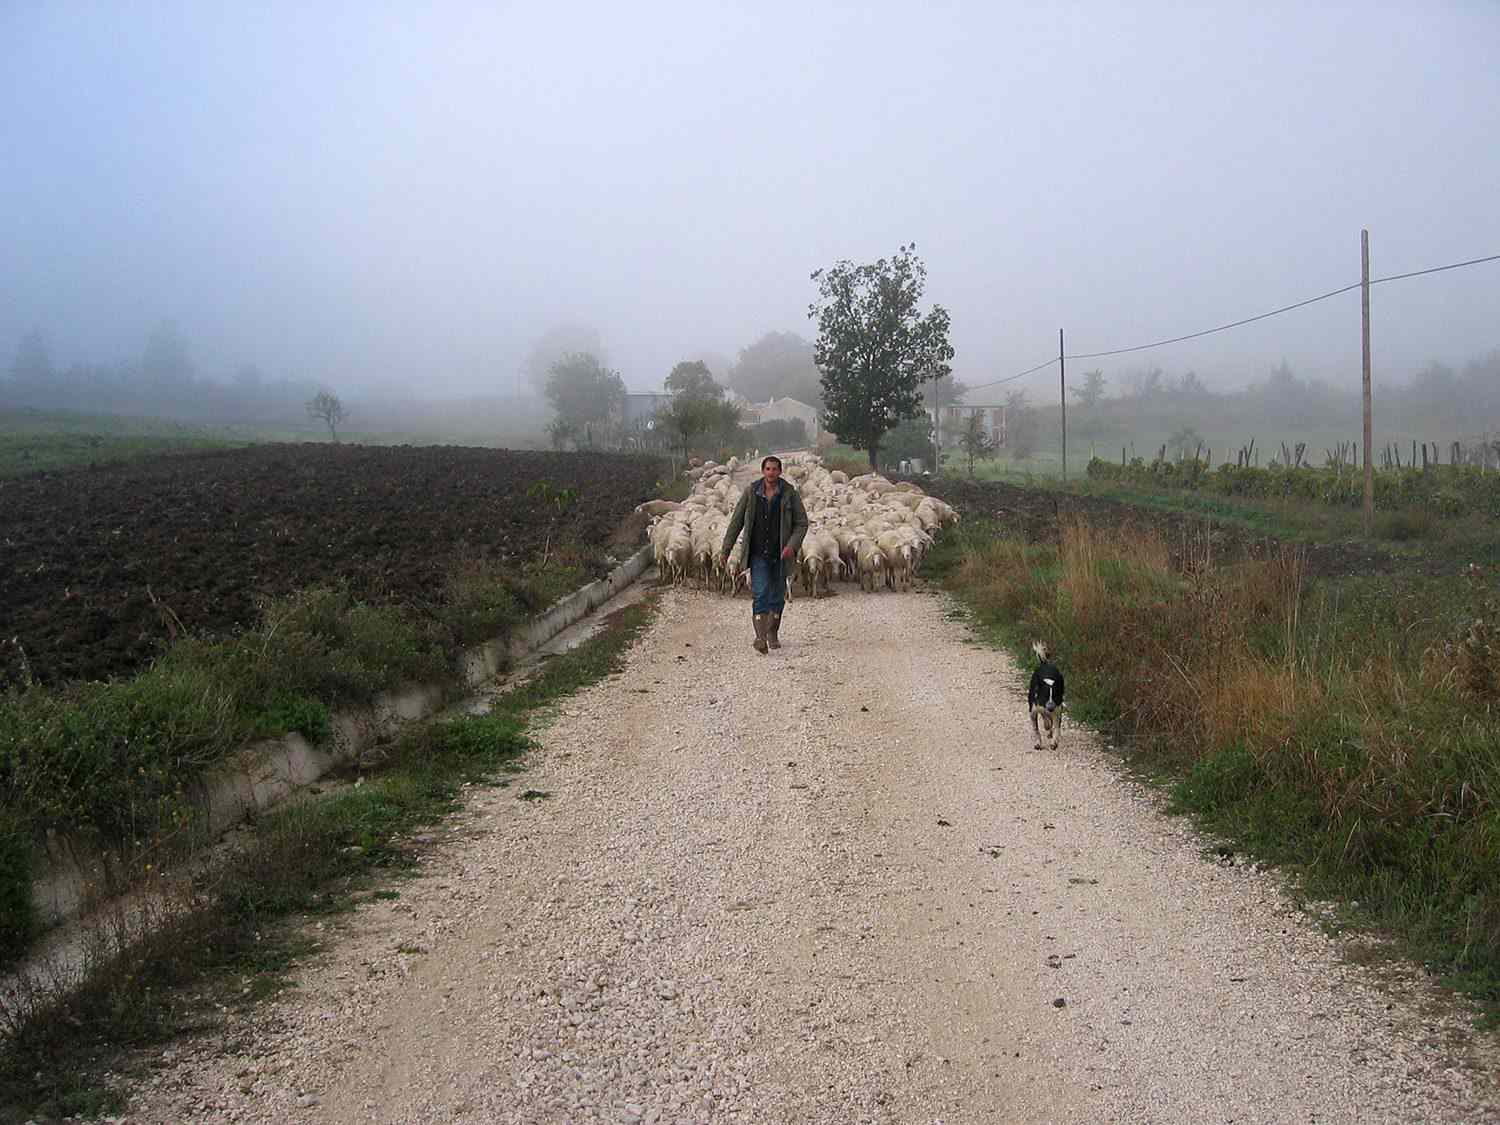 作者走在一条泥泞的碎石小路上，前面走着一条狗，后面走着一群羊。